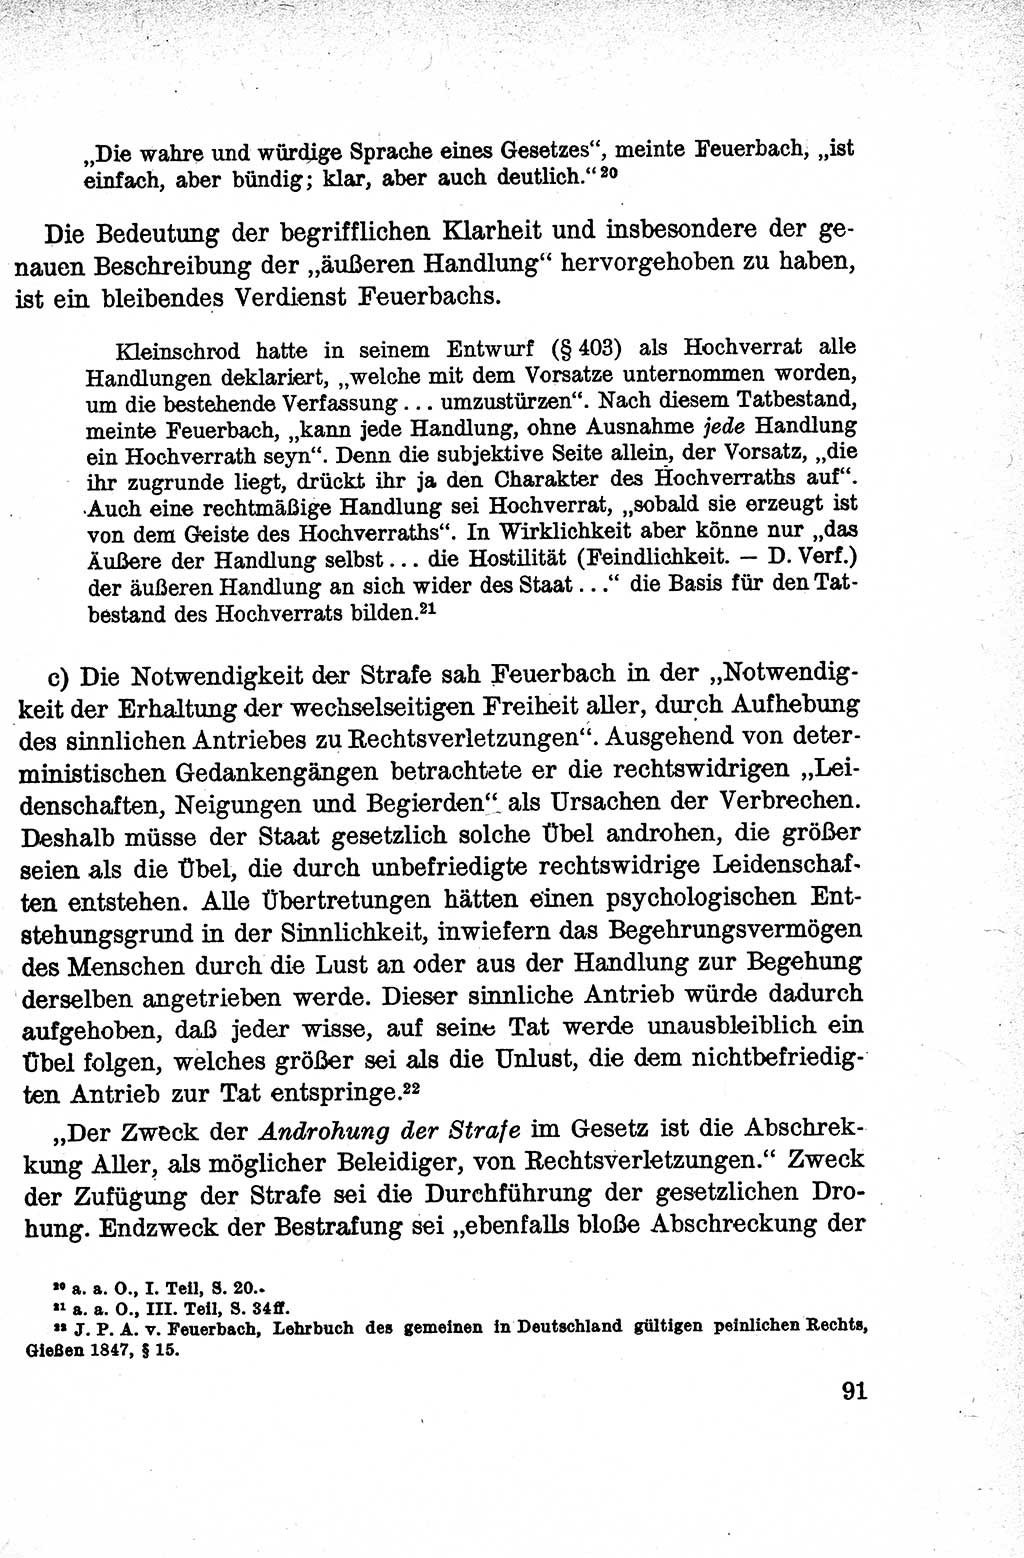 Lehrbuch des Strafrechts der Deutschen Demokratischen Republik (DDR), Allgemeiner Teil 1959, Seite 91 (Lb. Strafr. DDR AT 1959, S. 91)